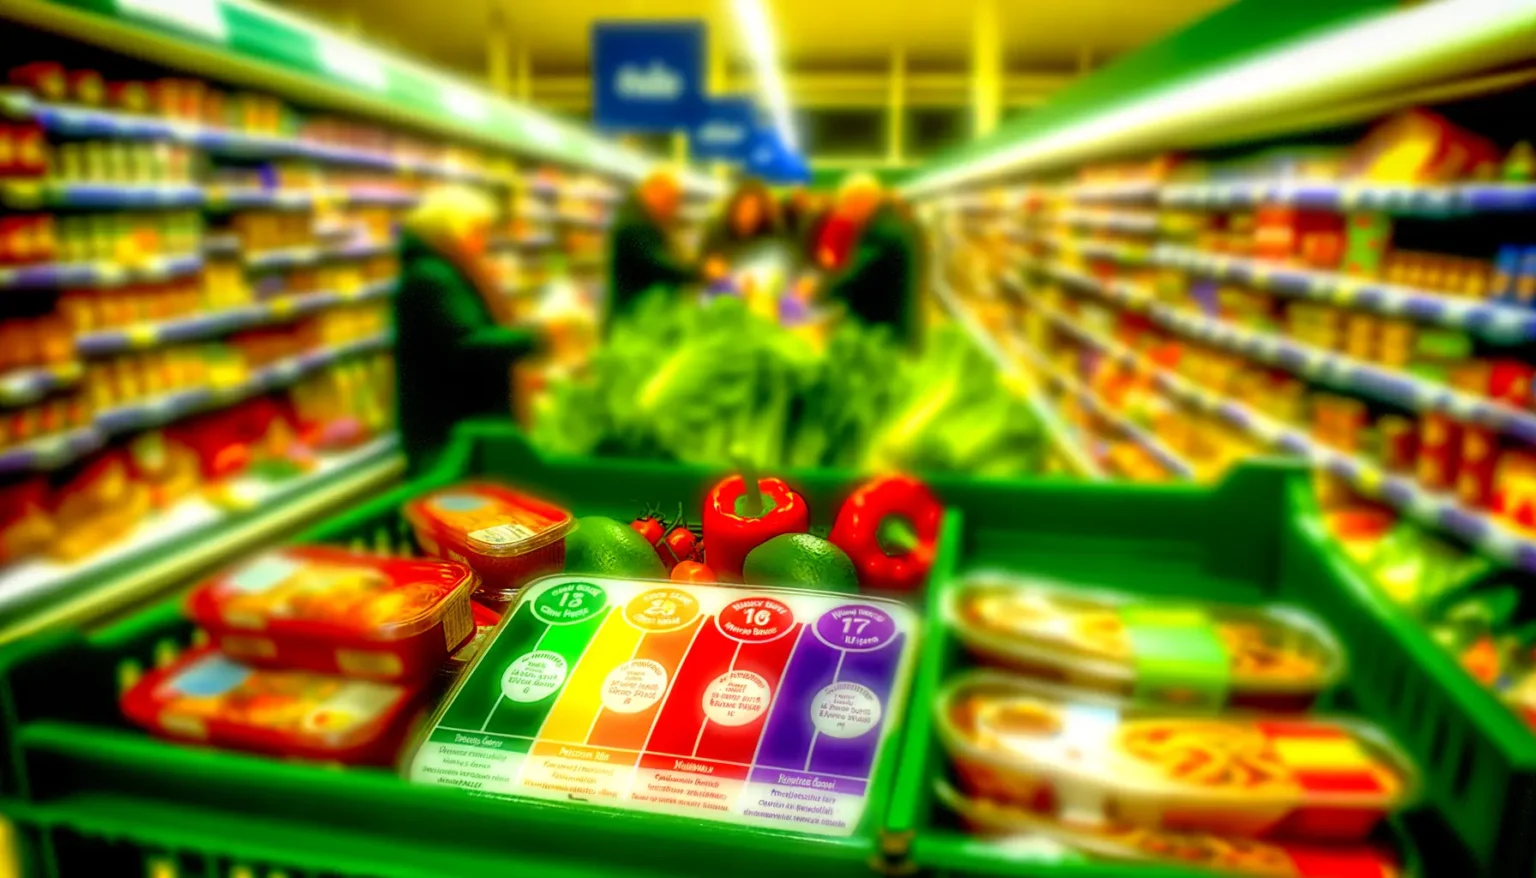 Ein Einkaufswagen gefüllt mit frischem Obst und Gemüse sowie einigen verpackten Lebensmitteln im Vordergrund, unscharfer Hintergrund zeigt Supermarktregale und Einkäufer.